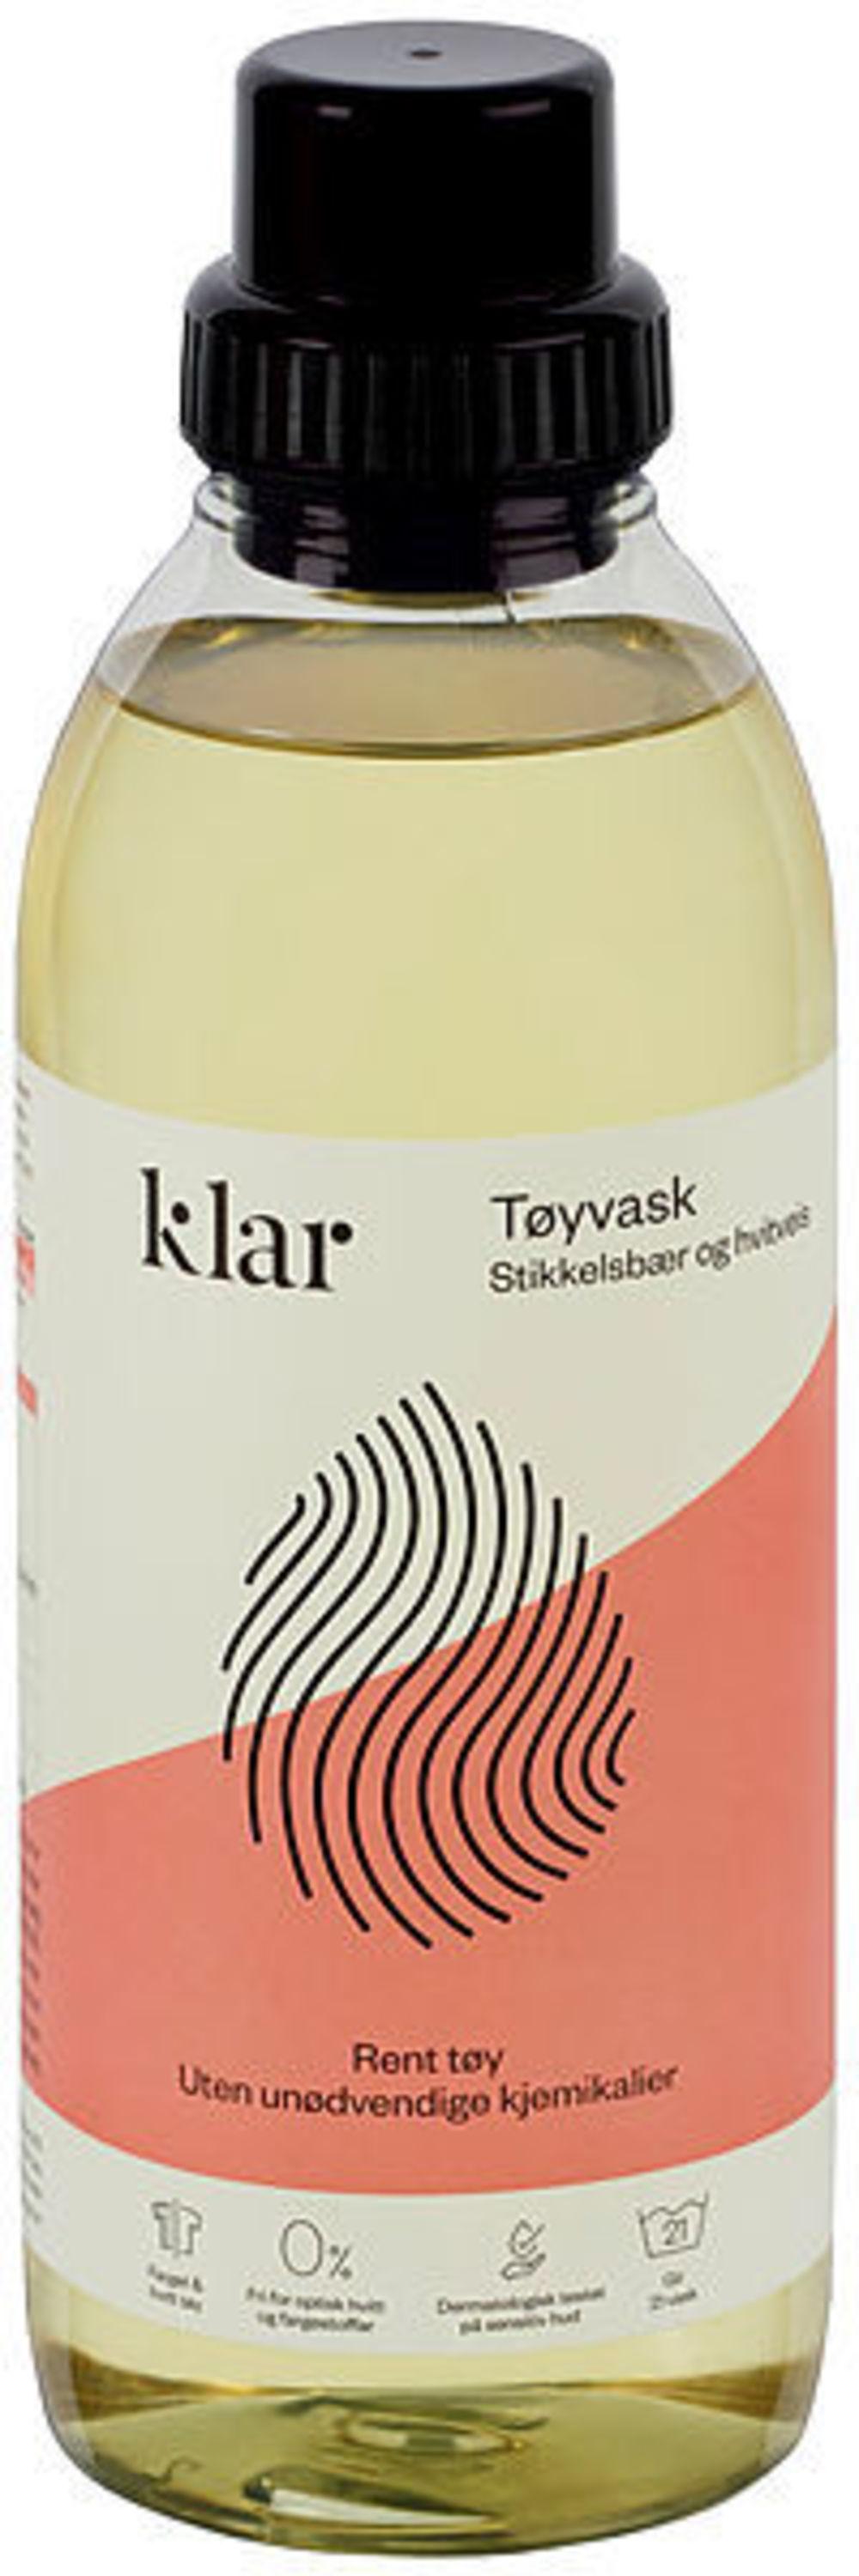 Klar Tøyvask 750 ml